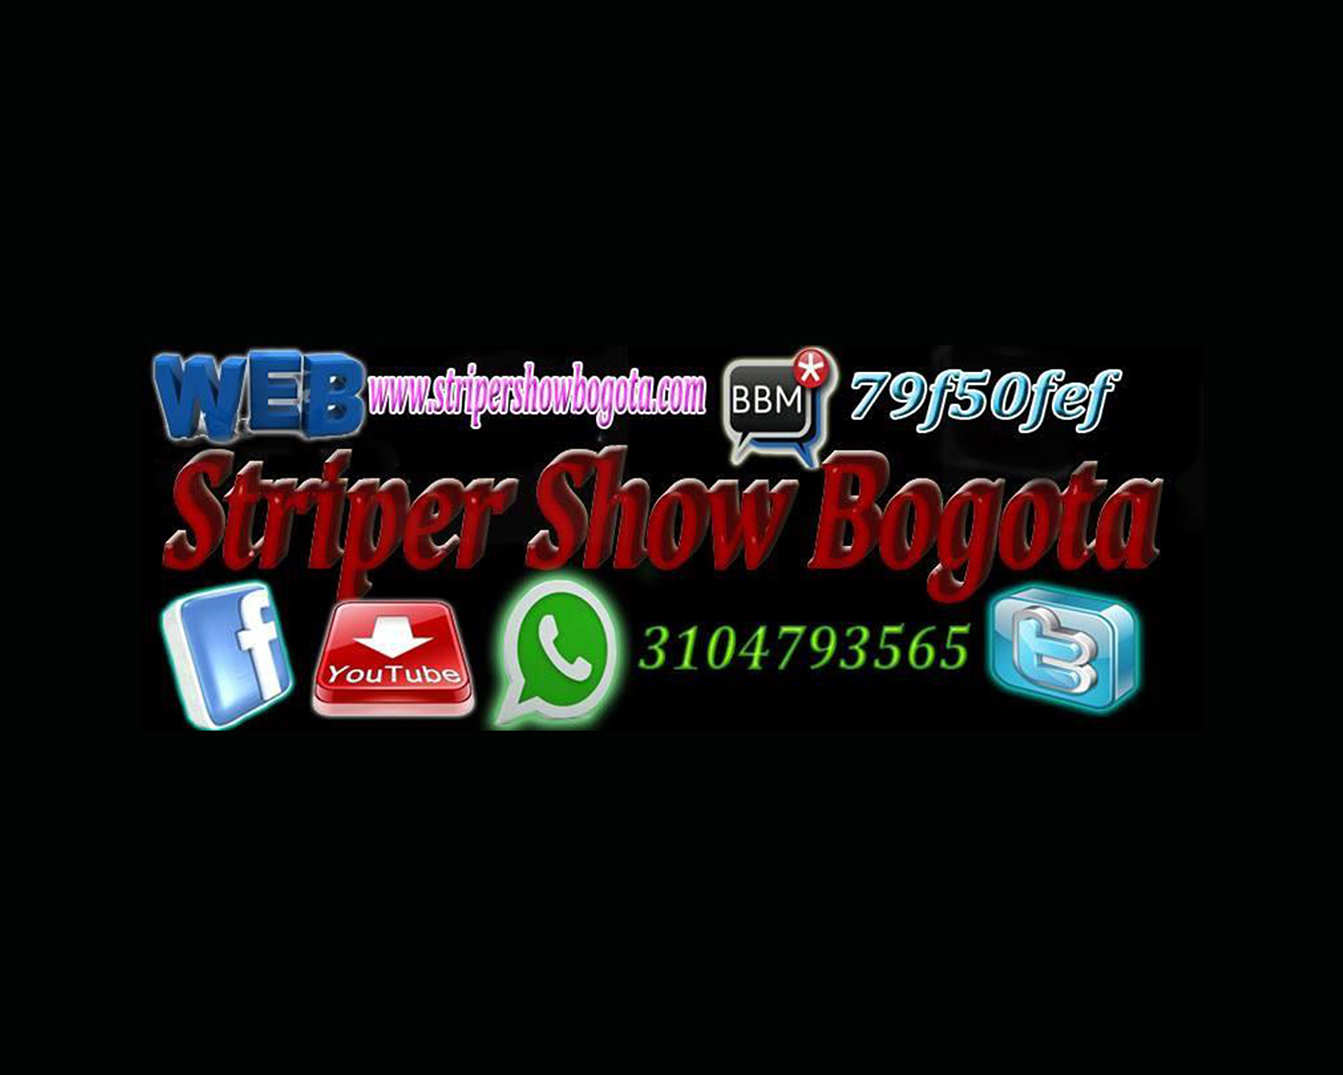 Striper Show Bogota